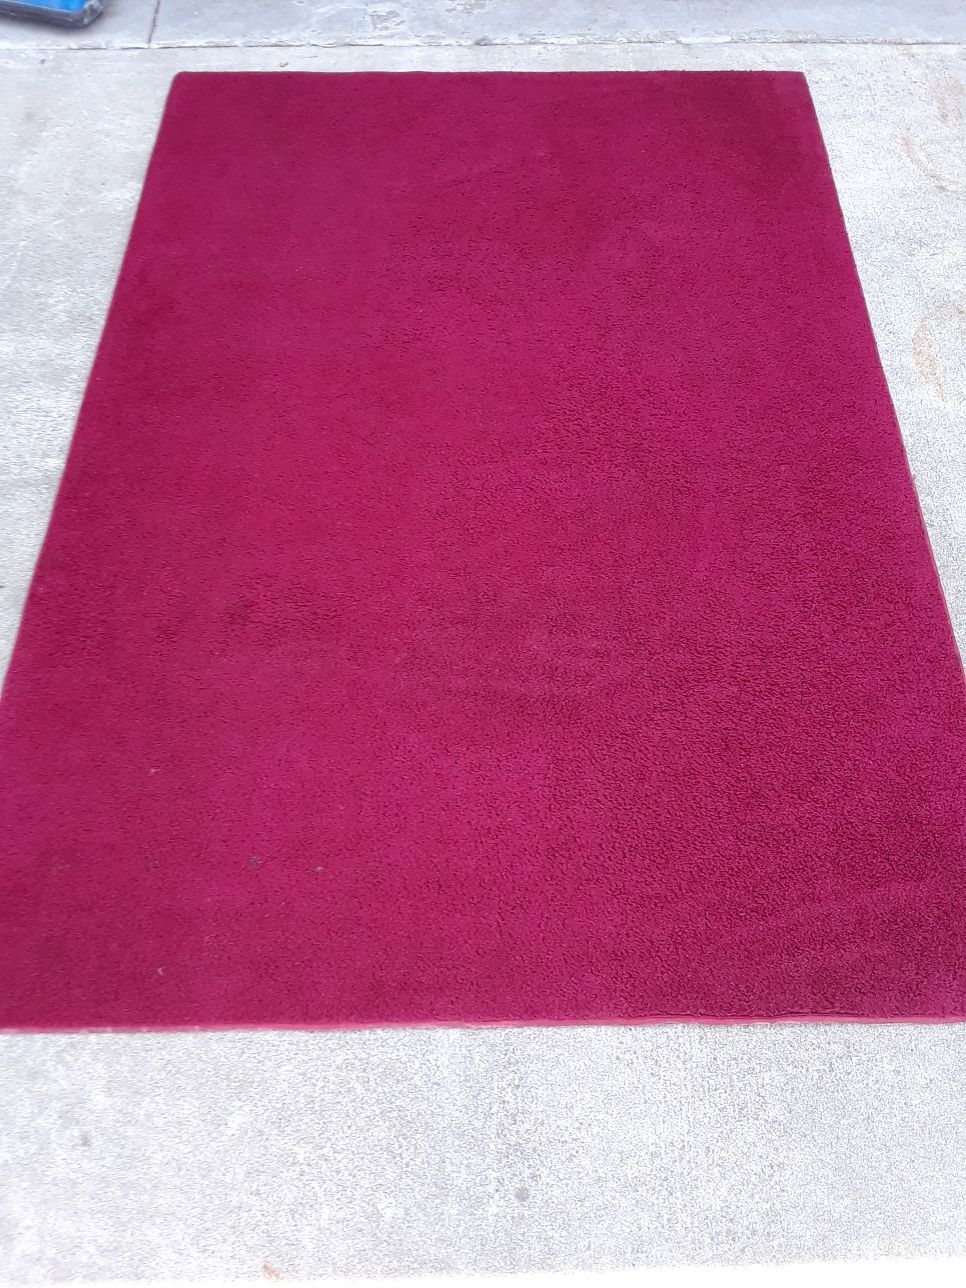 Area rug 4x6